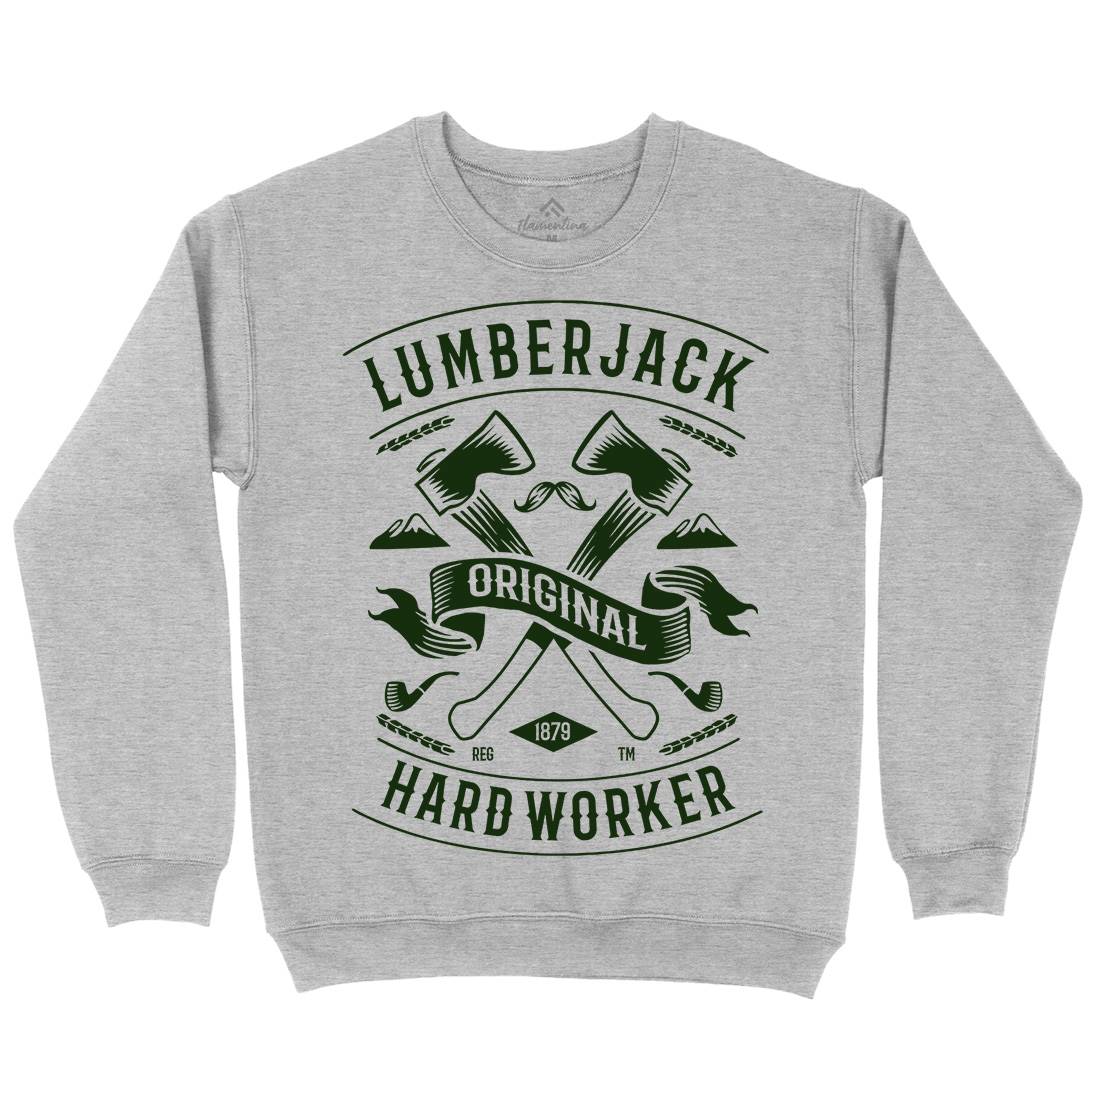 Lumberjack Kids Crew Neck Sweatshirt Retro B229